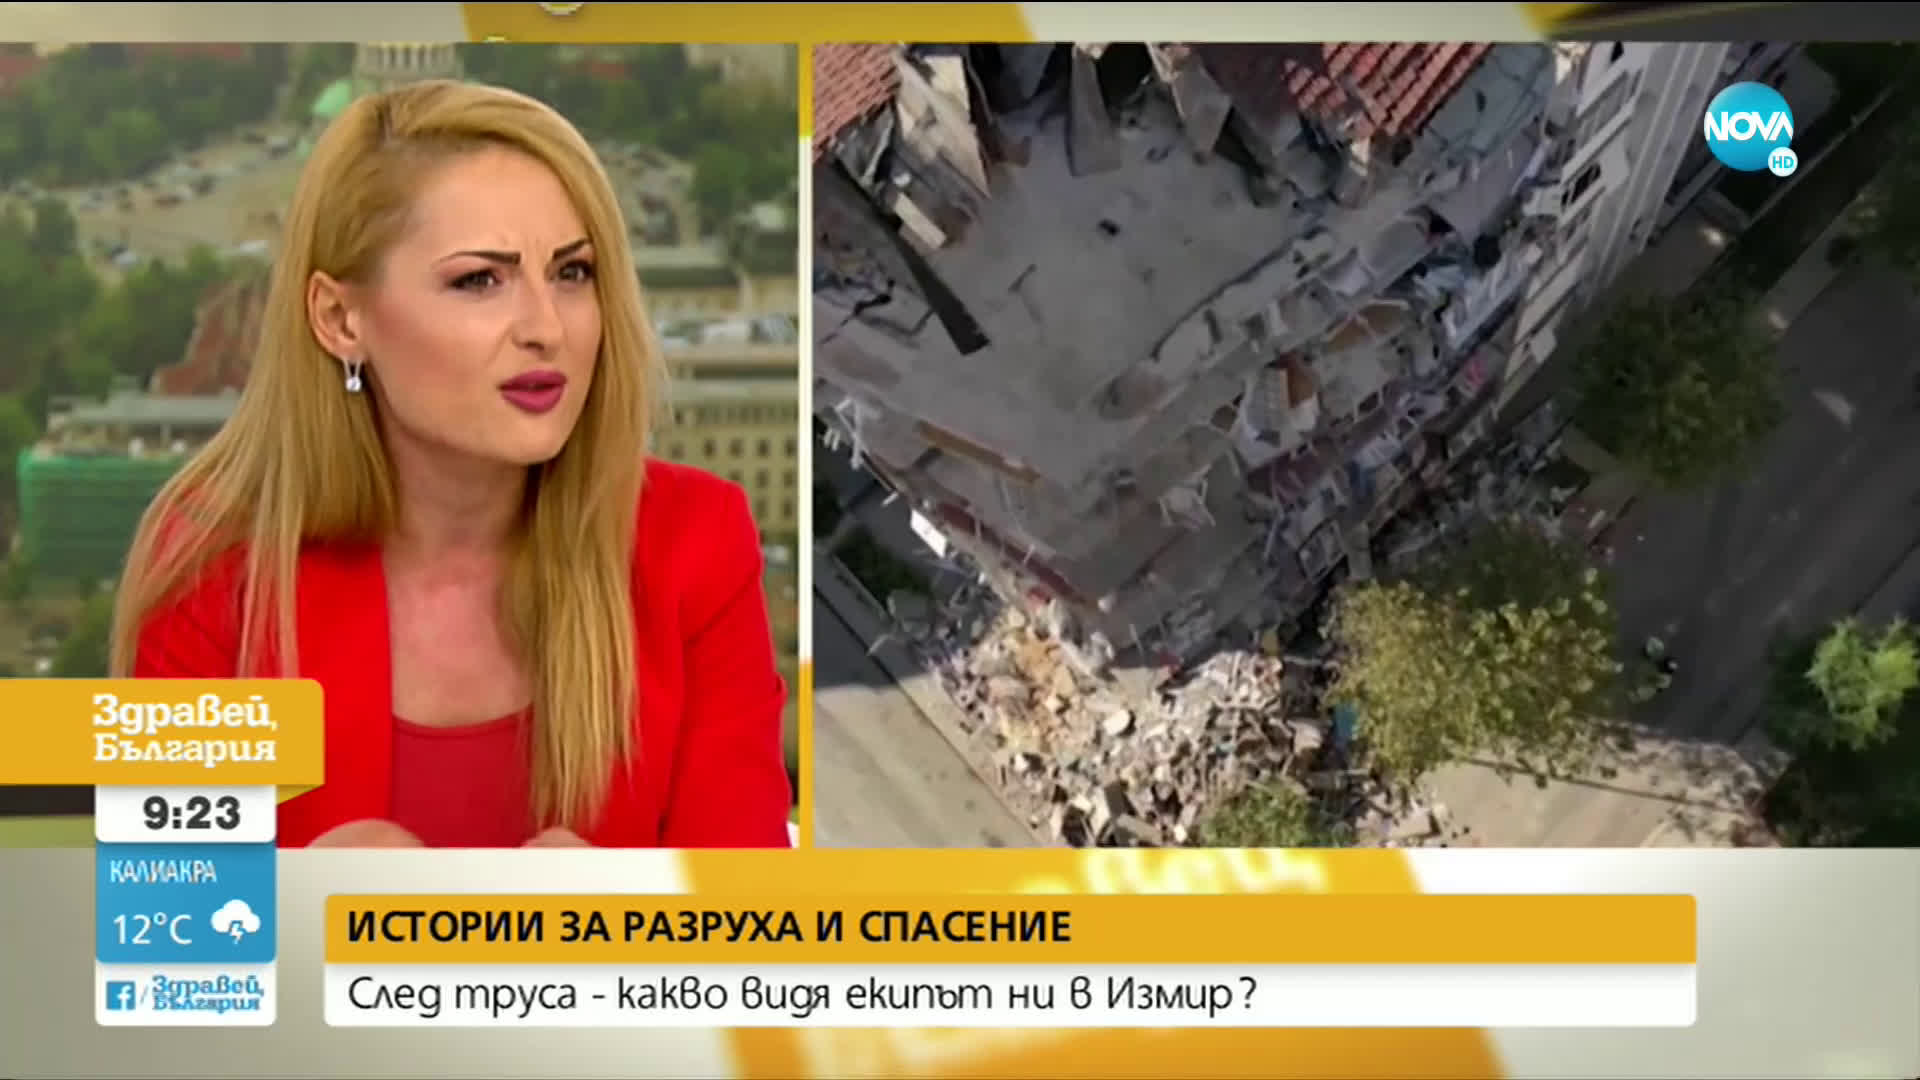 Истории за разруха и спасение: Какво видя в Измир репортерът Ивомира Пехливанова?